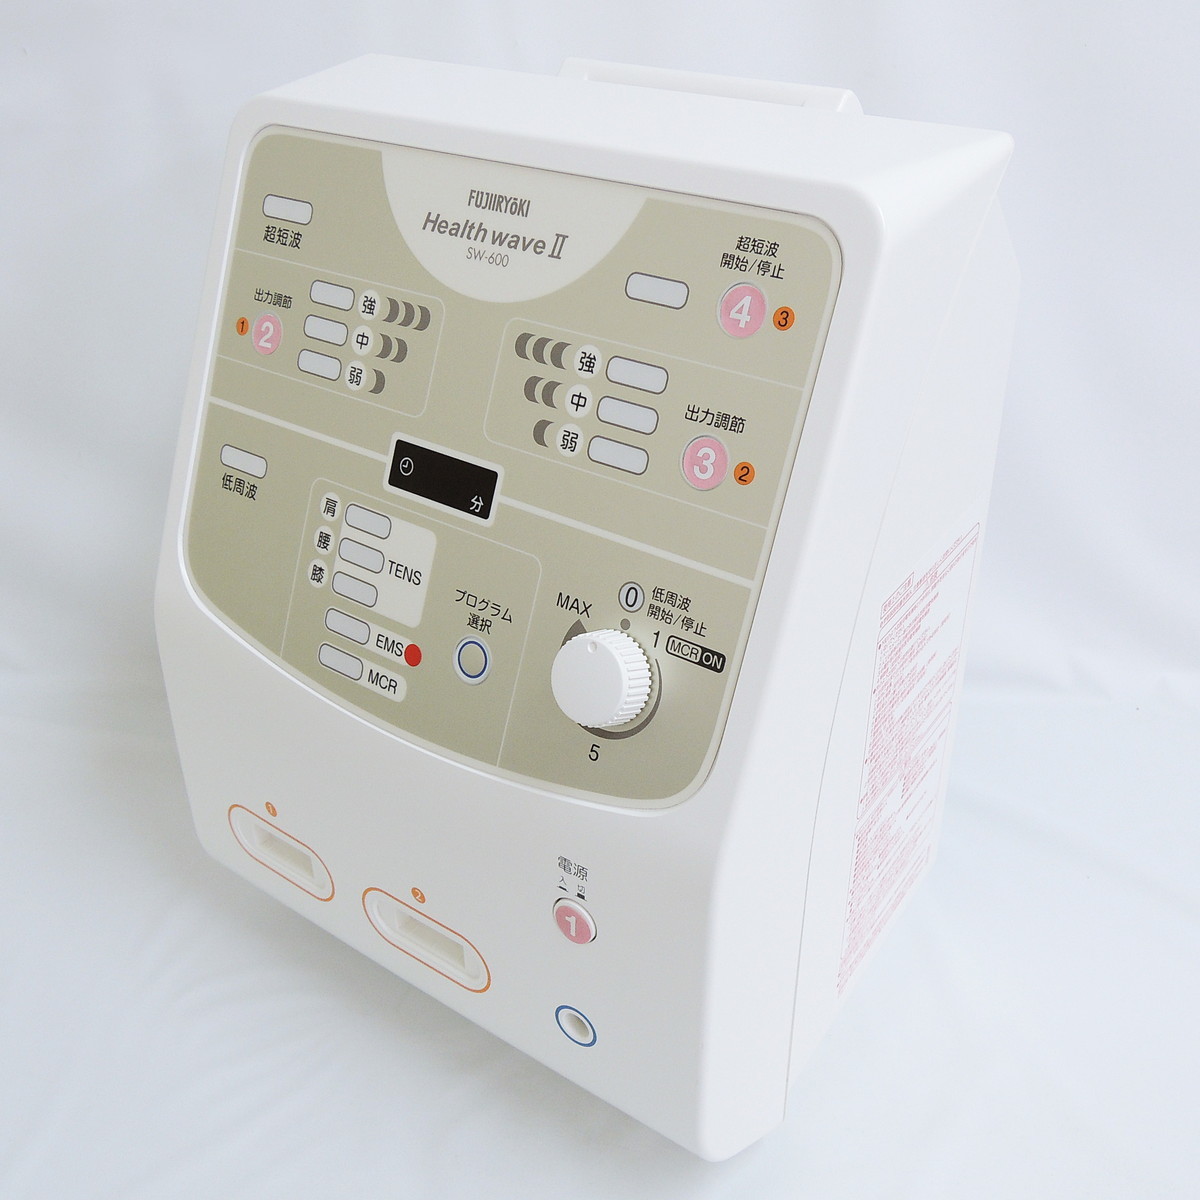 フジ医療器 SW-600 ヘルスウェーブII 低周波 超短波 組合せ 治療器 家庭用 医療 FUJIIRYOKI Health wave 2 伊藤超短波 参考価格300,000円 - 4